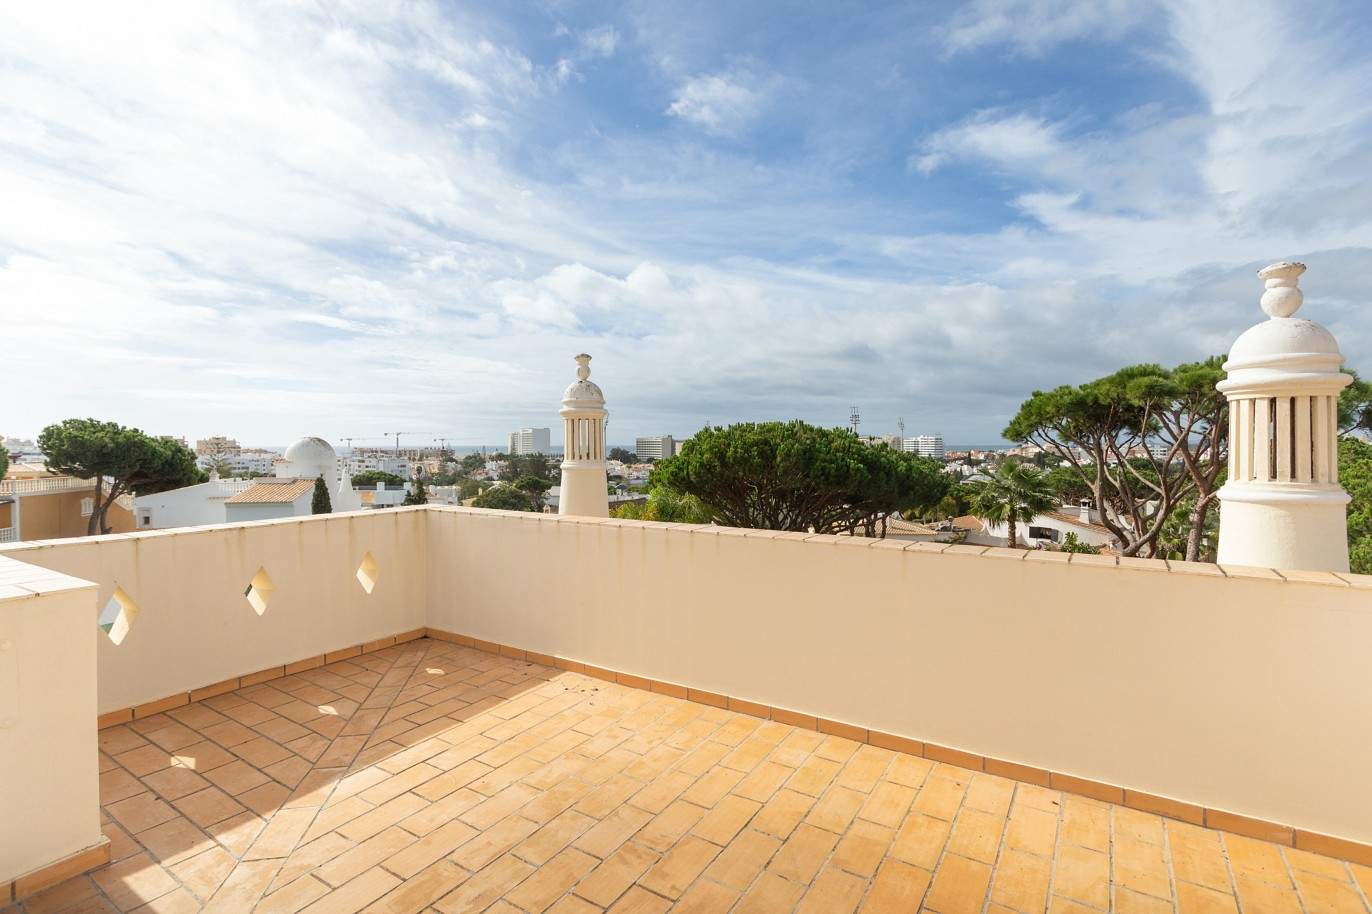 5 Bedroom Villa with pool for sale in Vilamoura, Algarve_212561